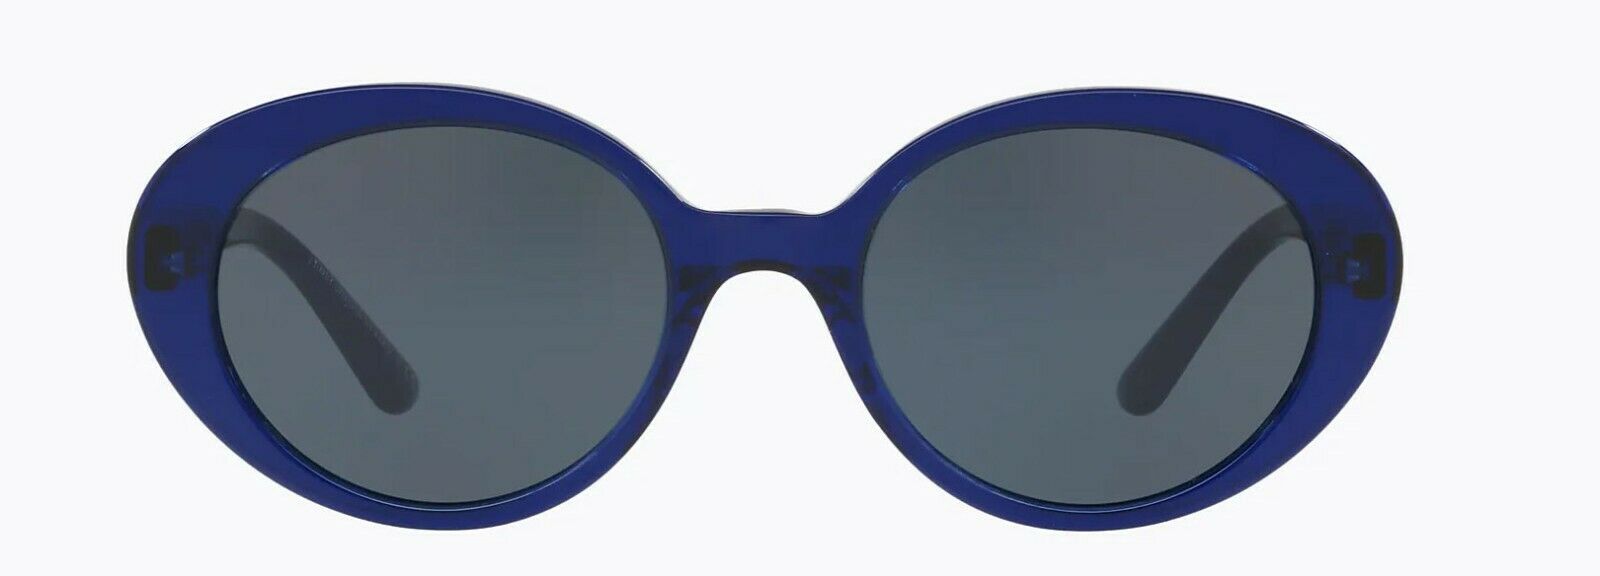 Oliver Peoples Sunglasses 5344SU 1566R5 The Row Parquet Denim Blue / Blue 50mm-827934419865-classypw.com-2